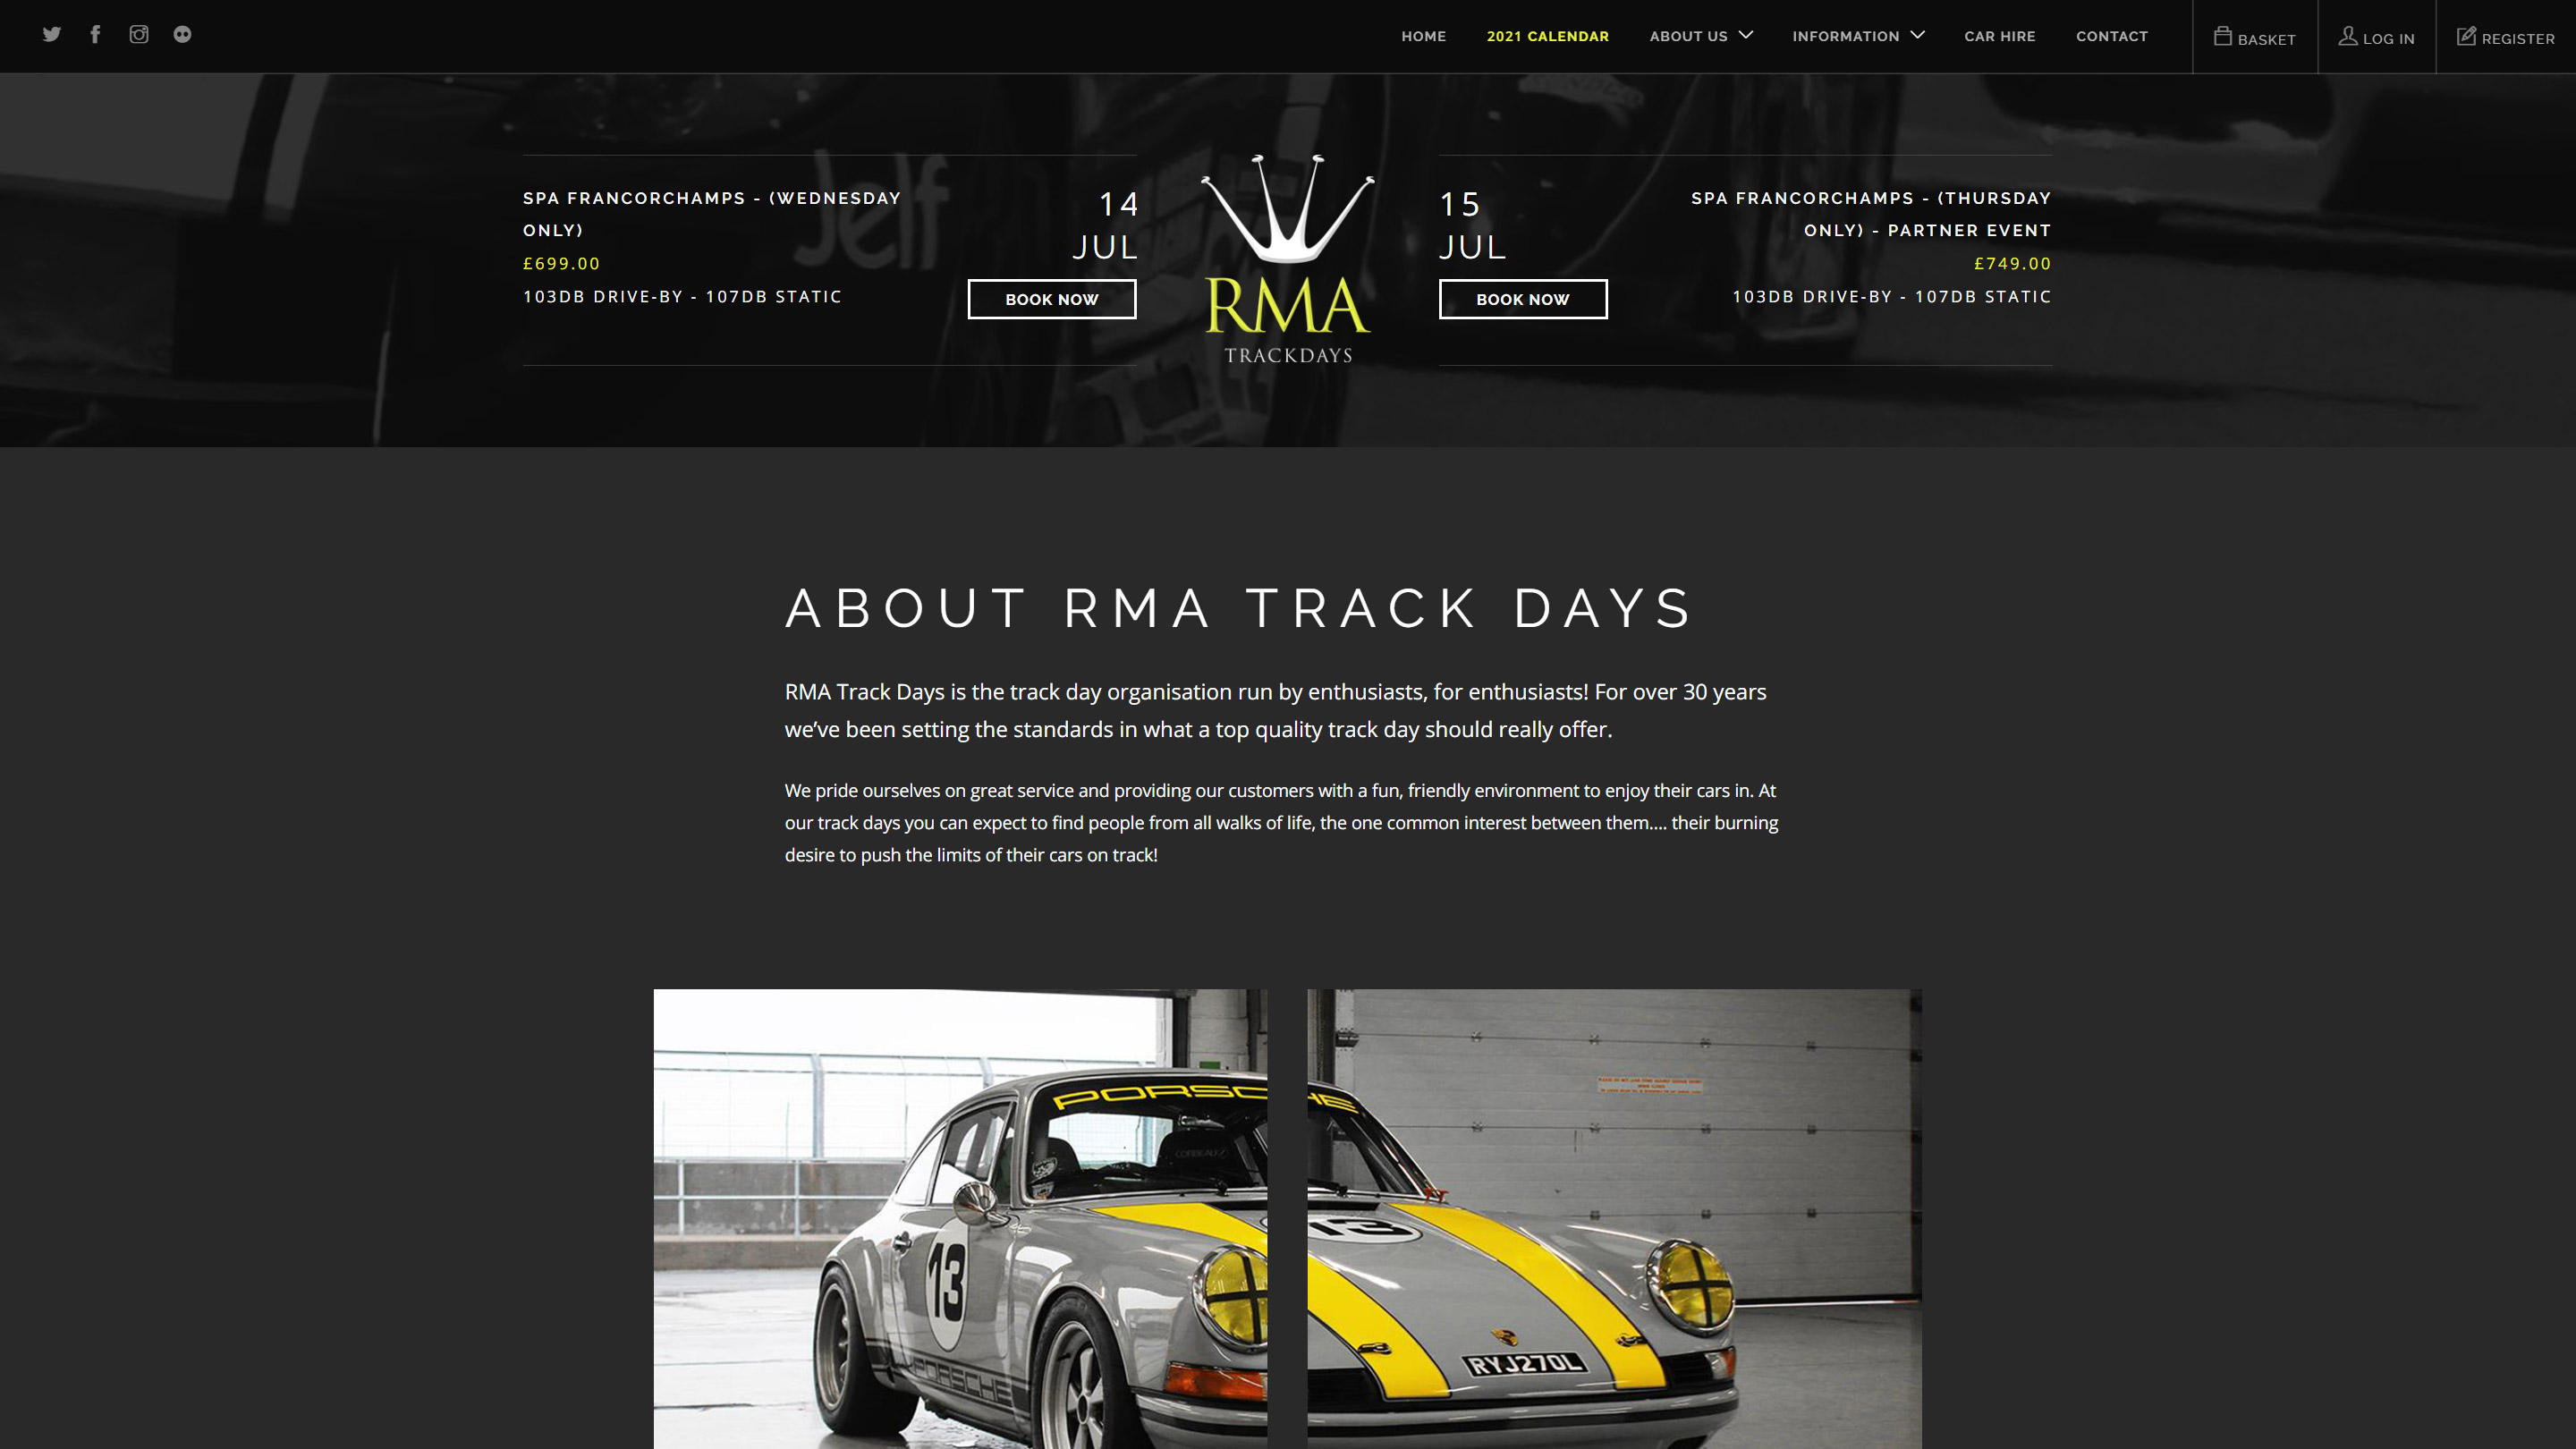 RMA Track Days